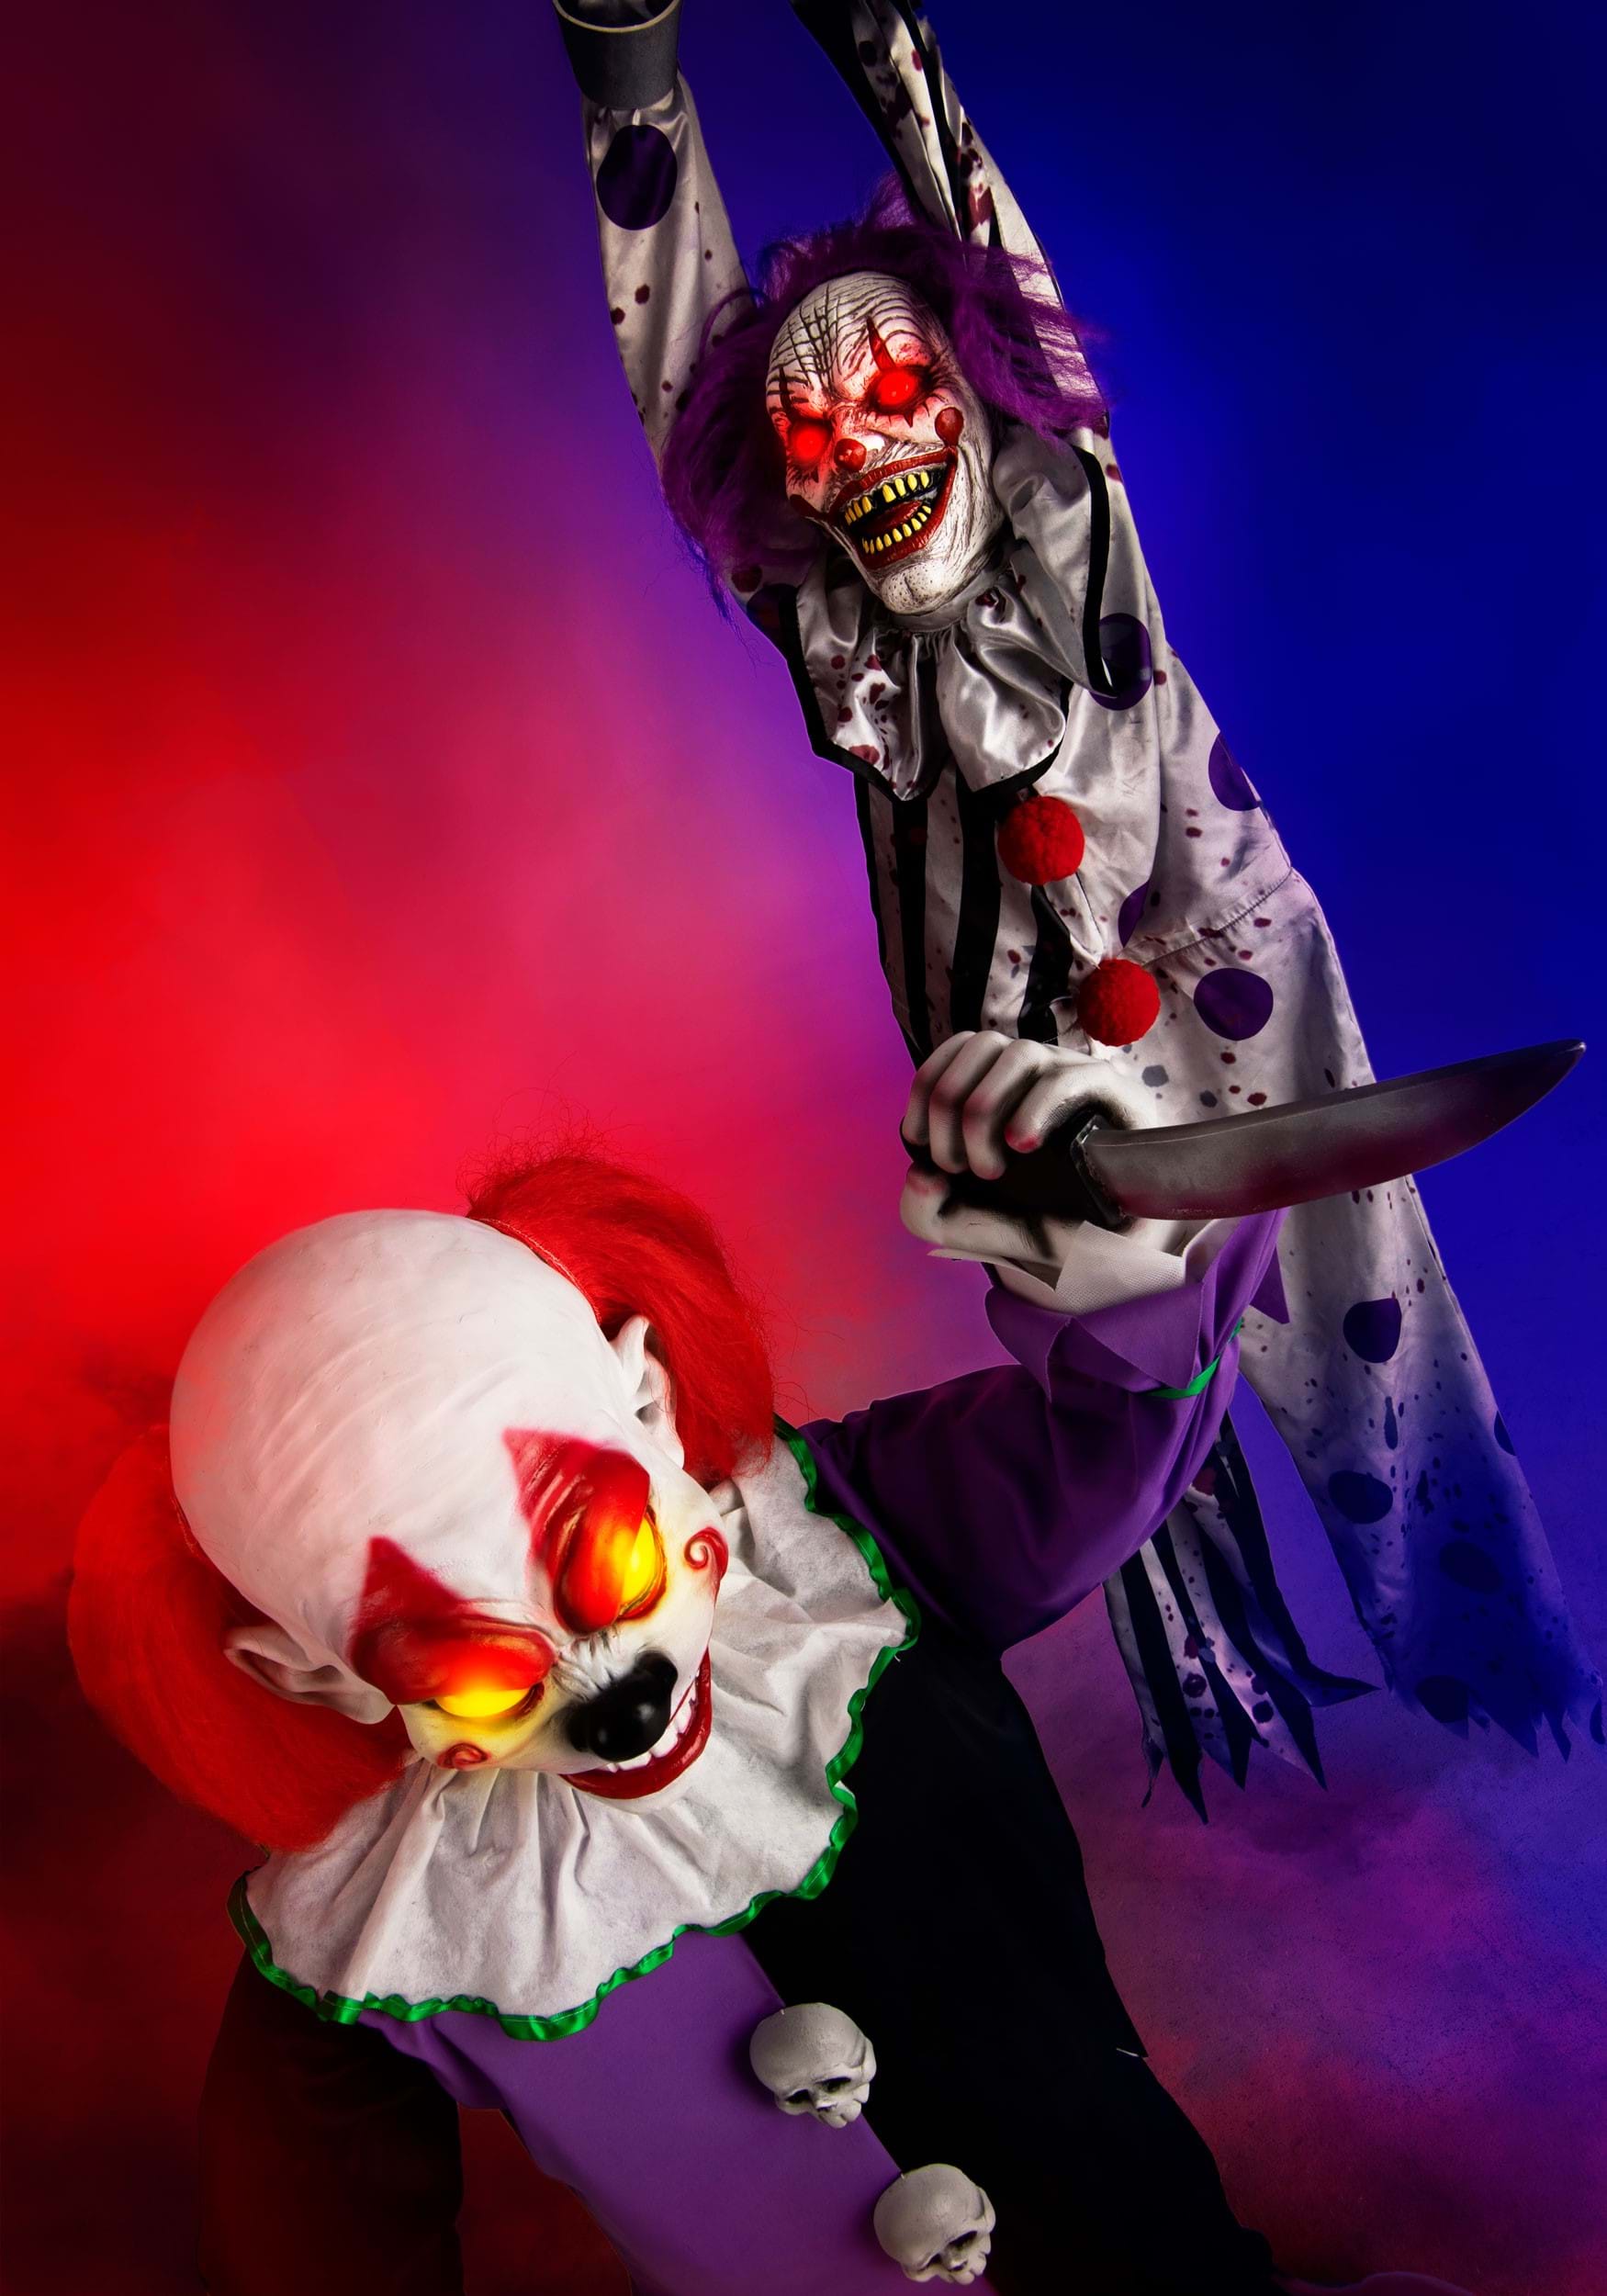 Animated Little Killer Clown Halloween Decoration